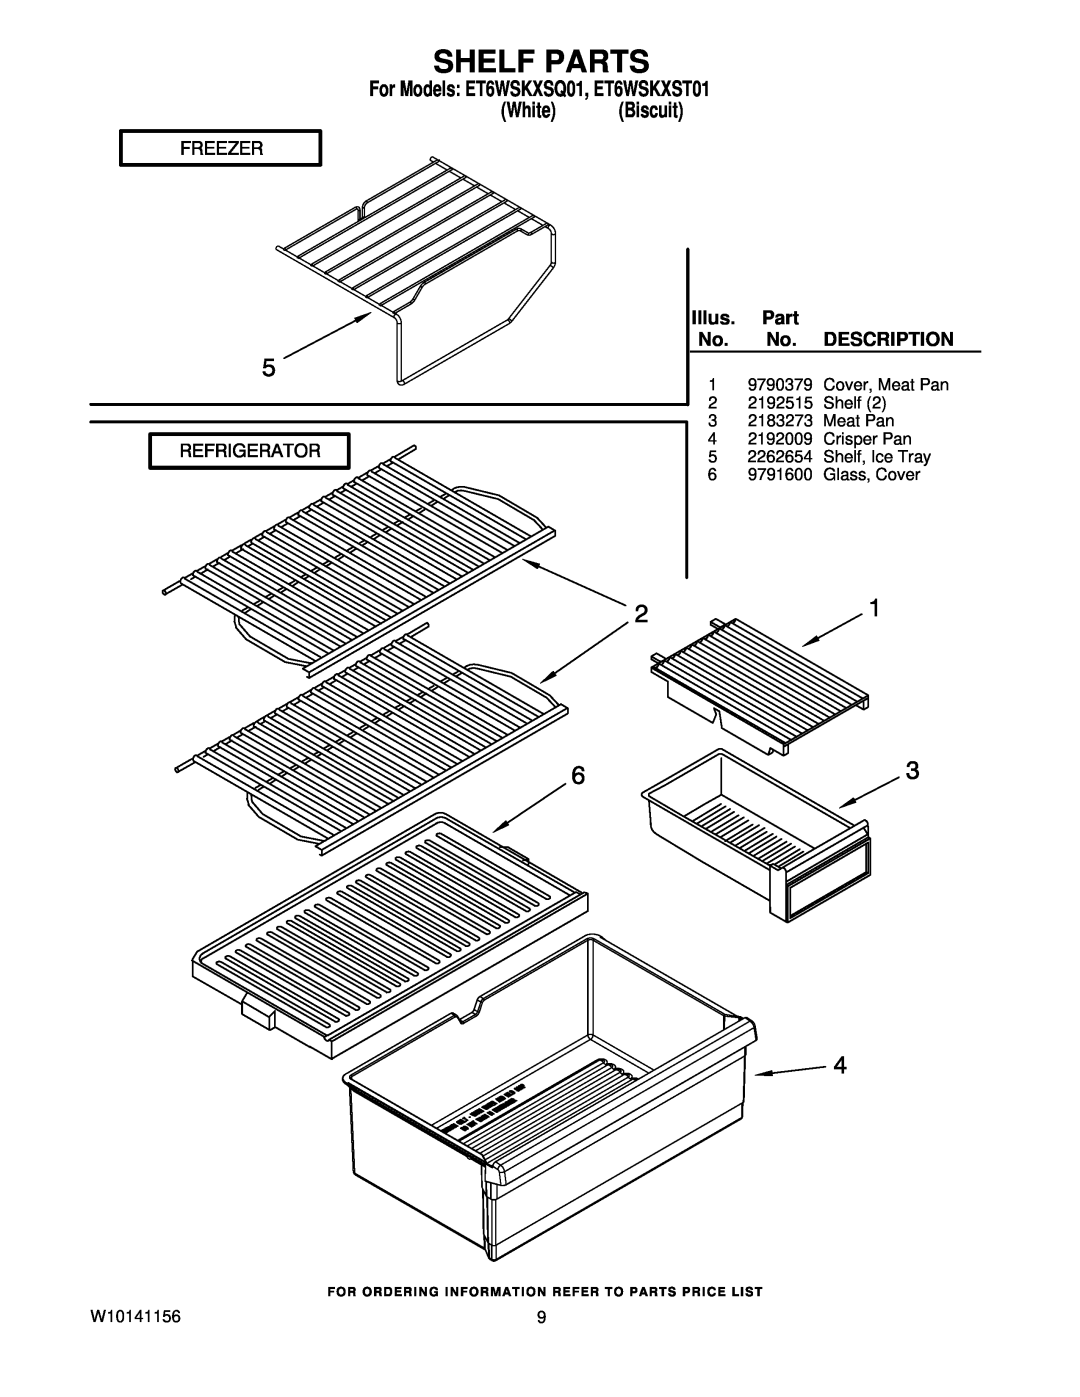 Whirlpool manual Shelf Parts, Illus, Description, For Models ET6WSKXSQ01, ET6WSKXST01 White Biscuit 